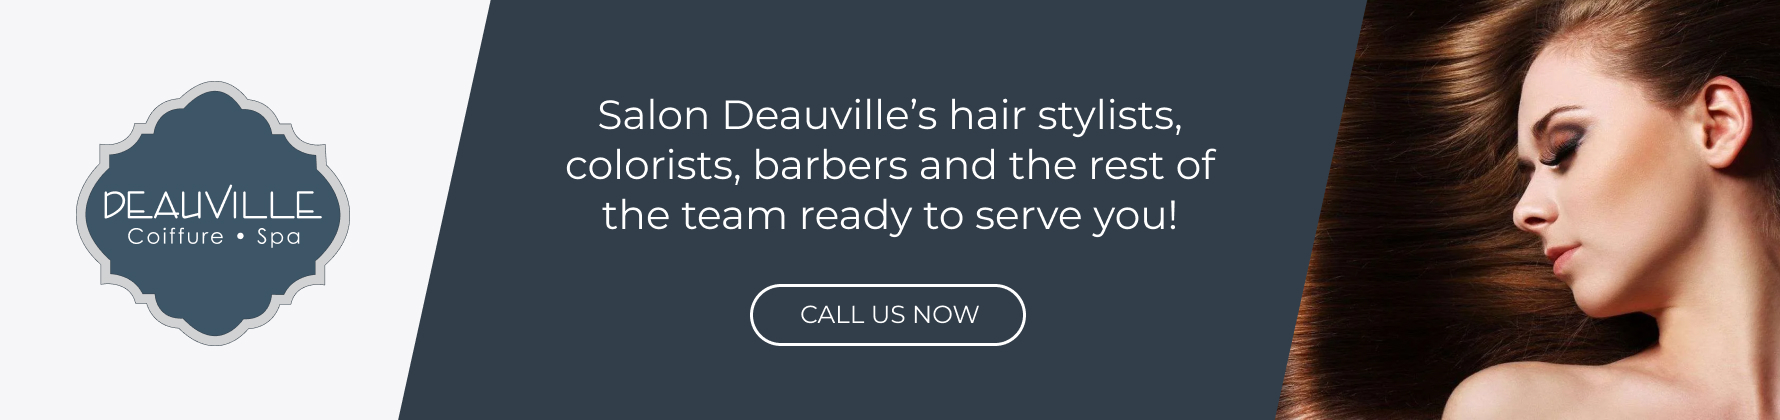 hair-salon-montreal-salon-deauville